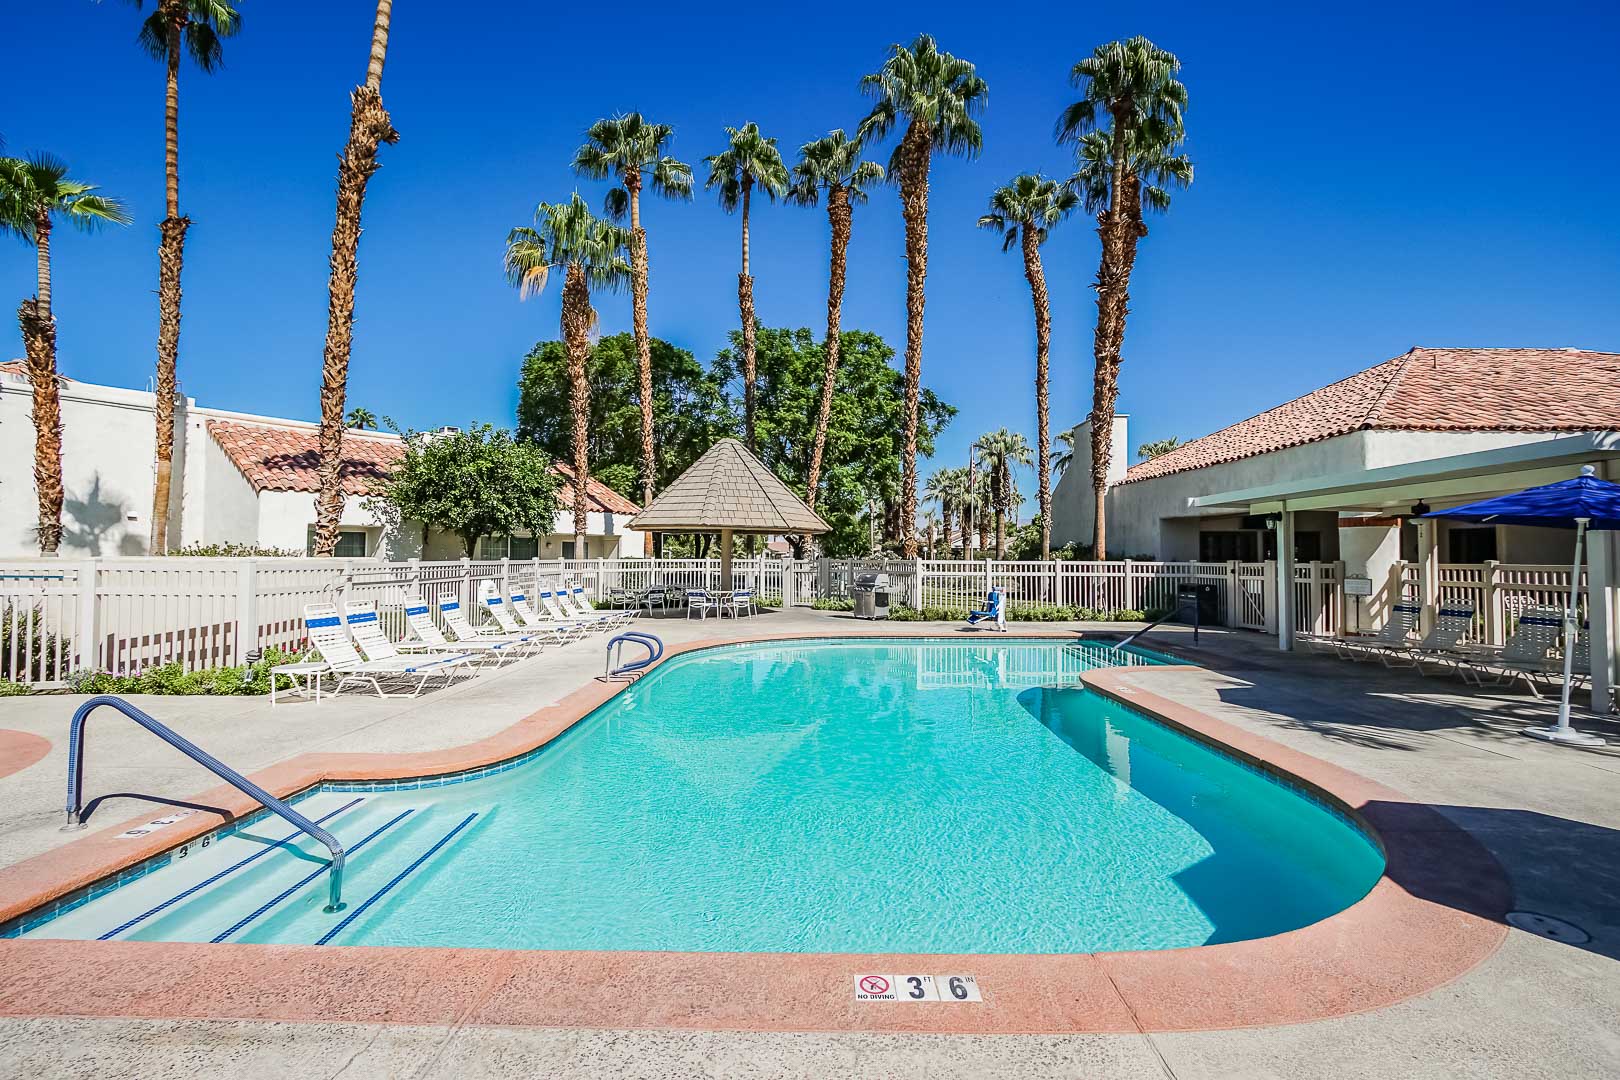 A crisp pool at VRI Americas' Desert Breezes Resort in California